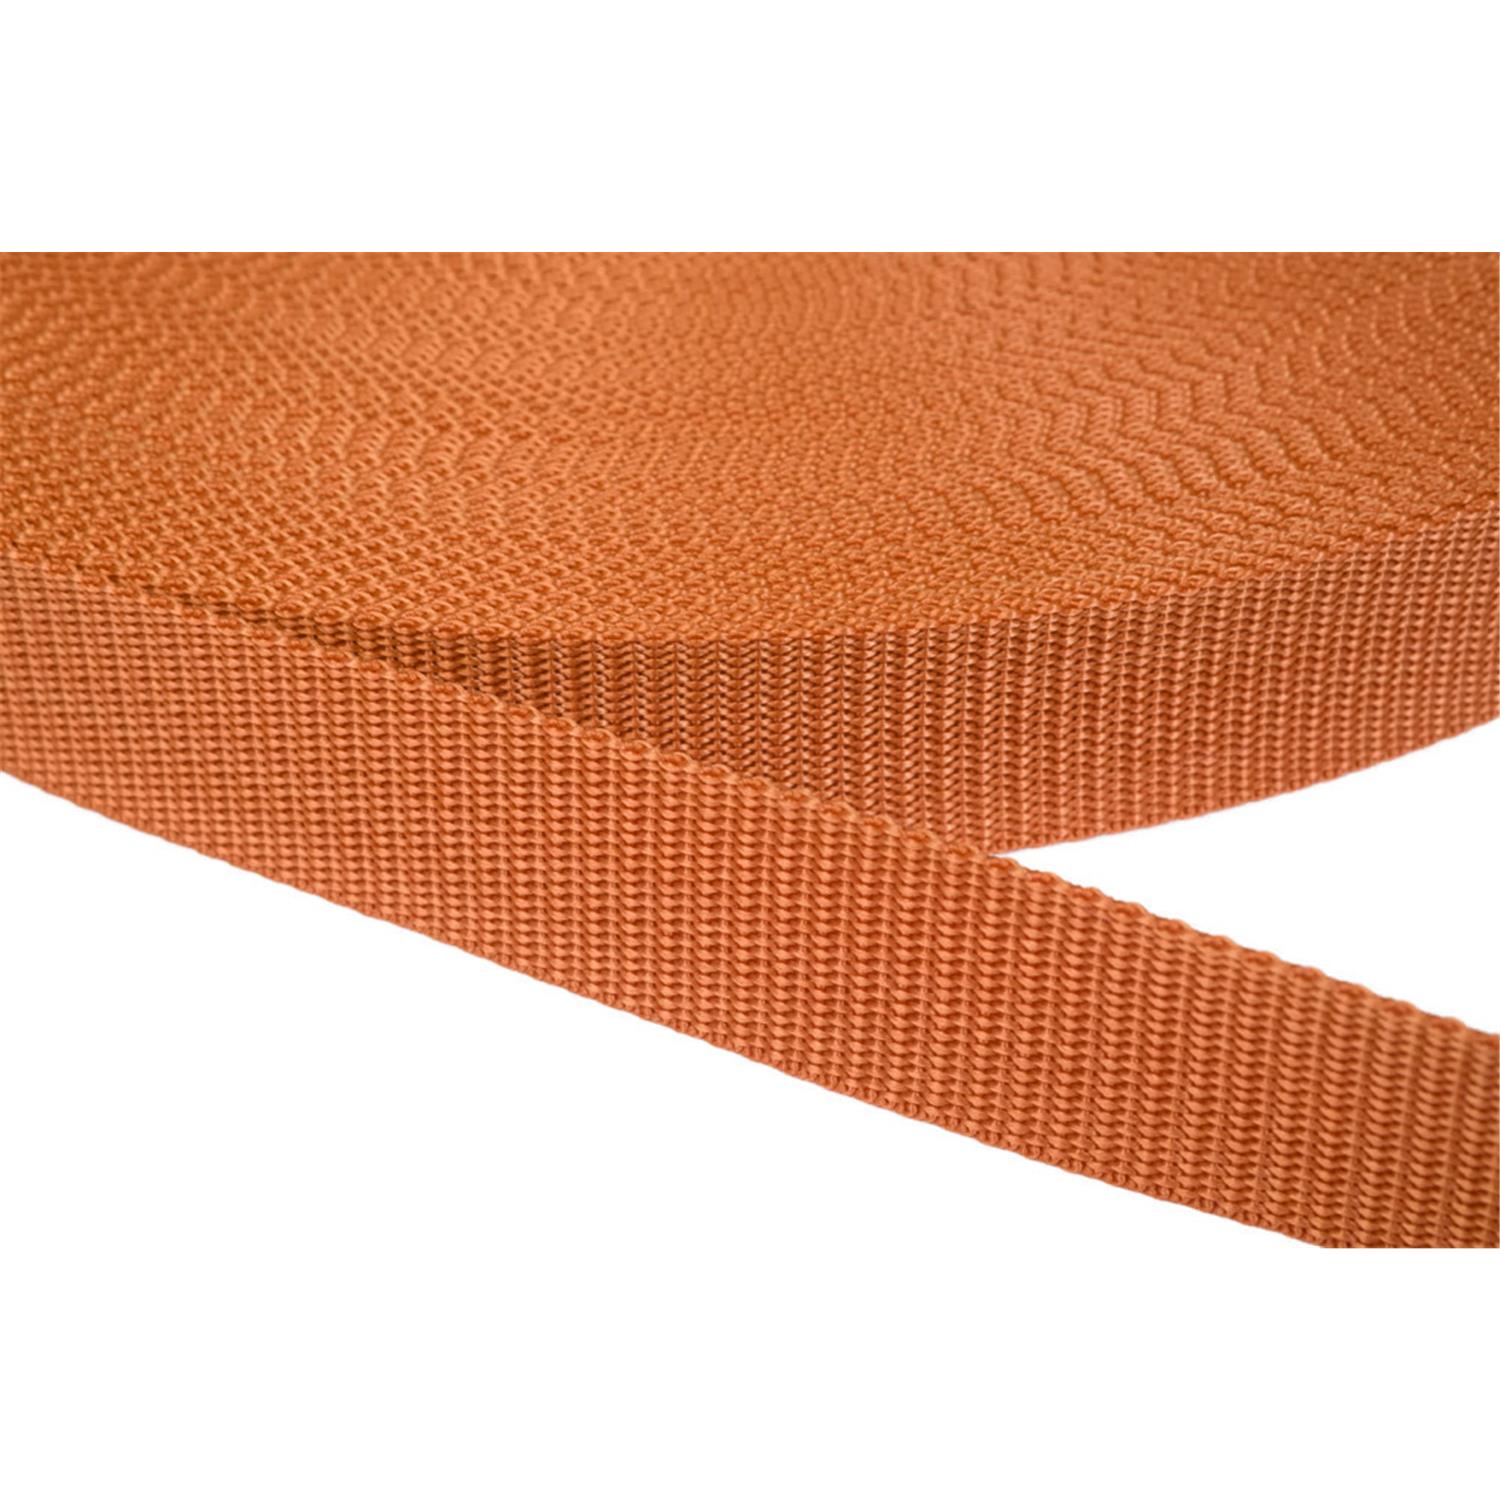 Gurtband 25mm breit aus Polypropylen in 41 Farben 05 - ockerbraun 12 Meter